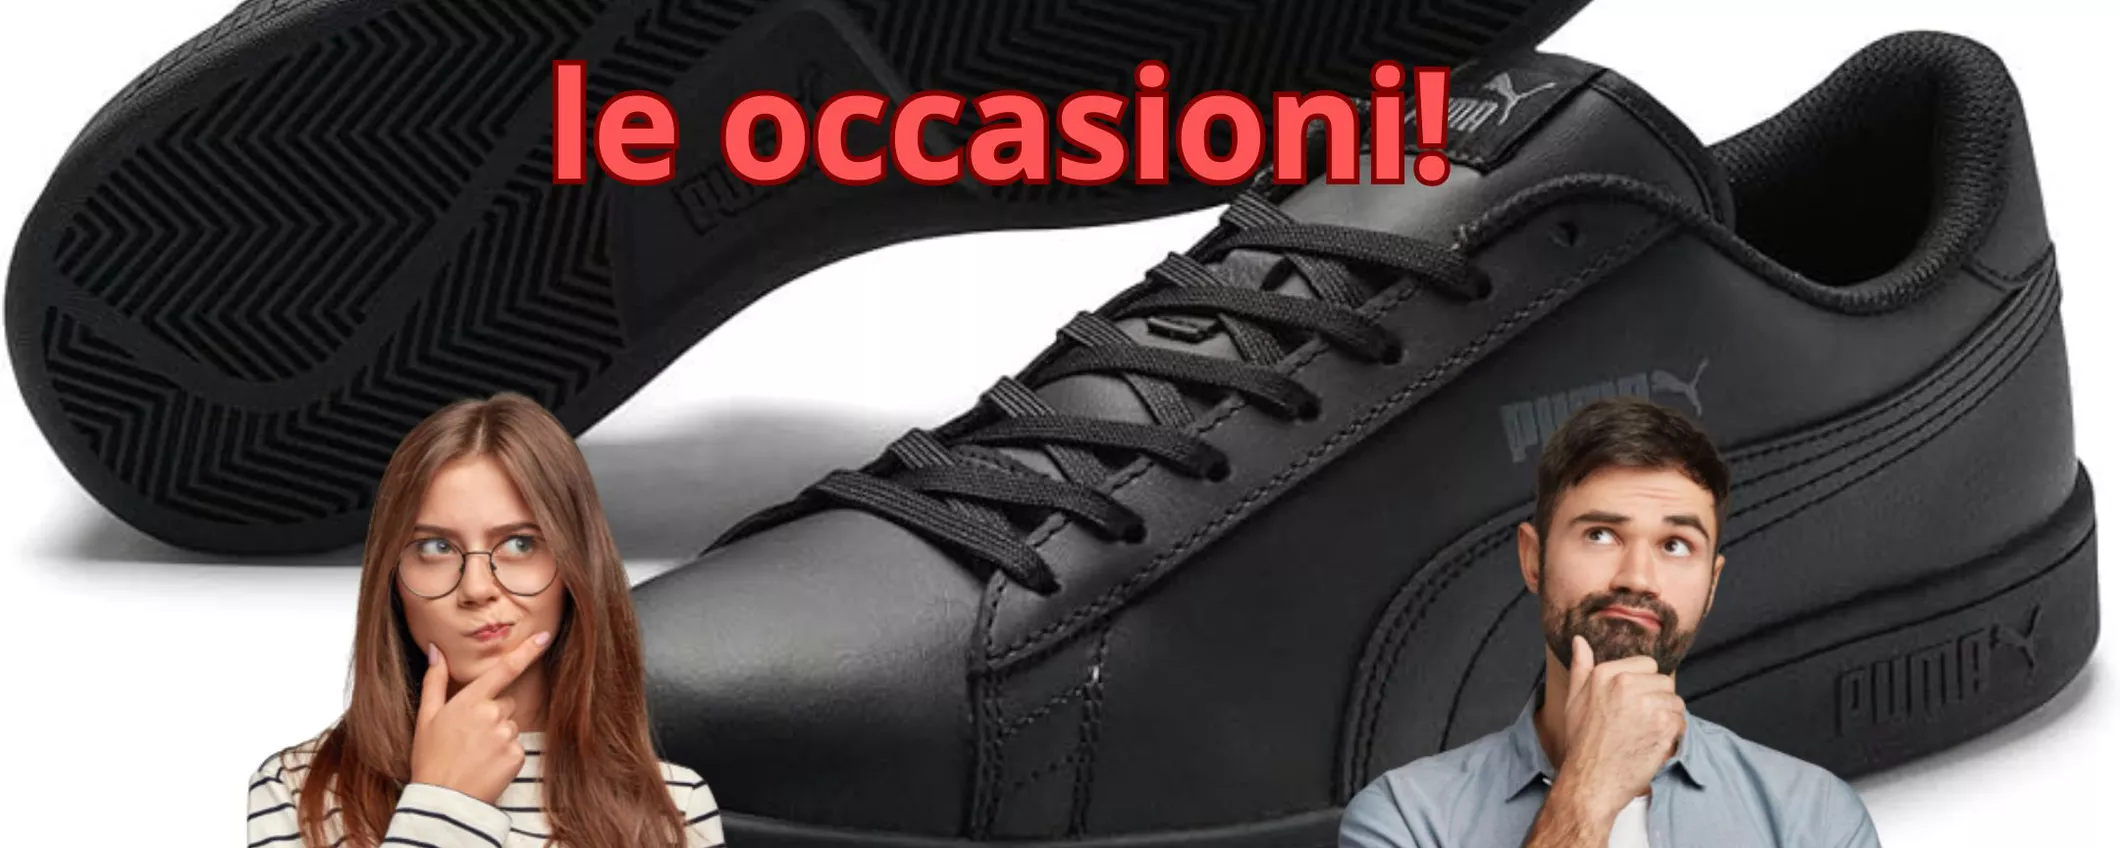 BLACK FRIDAY sulle scarpe PUMA UNISEX: se hai questa taglia le paghi il 44% in meno!